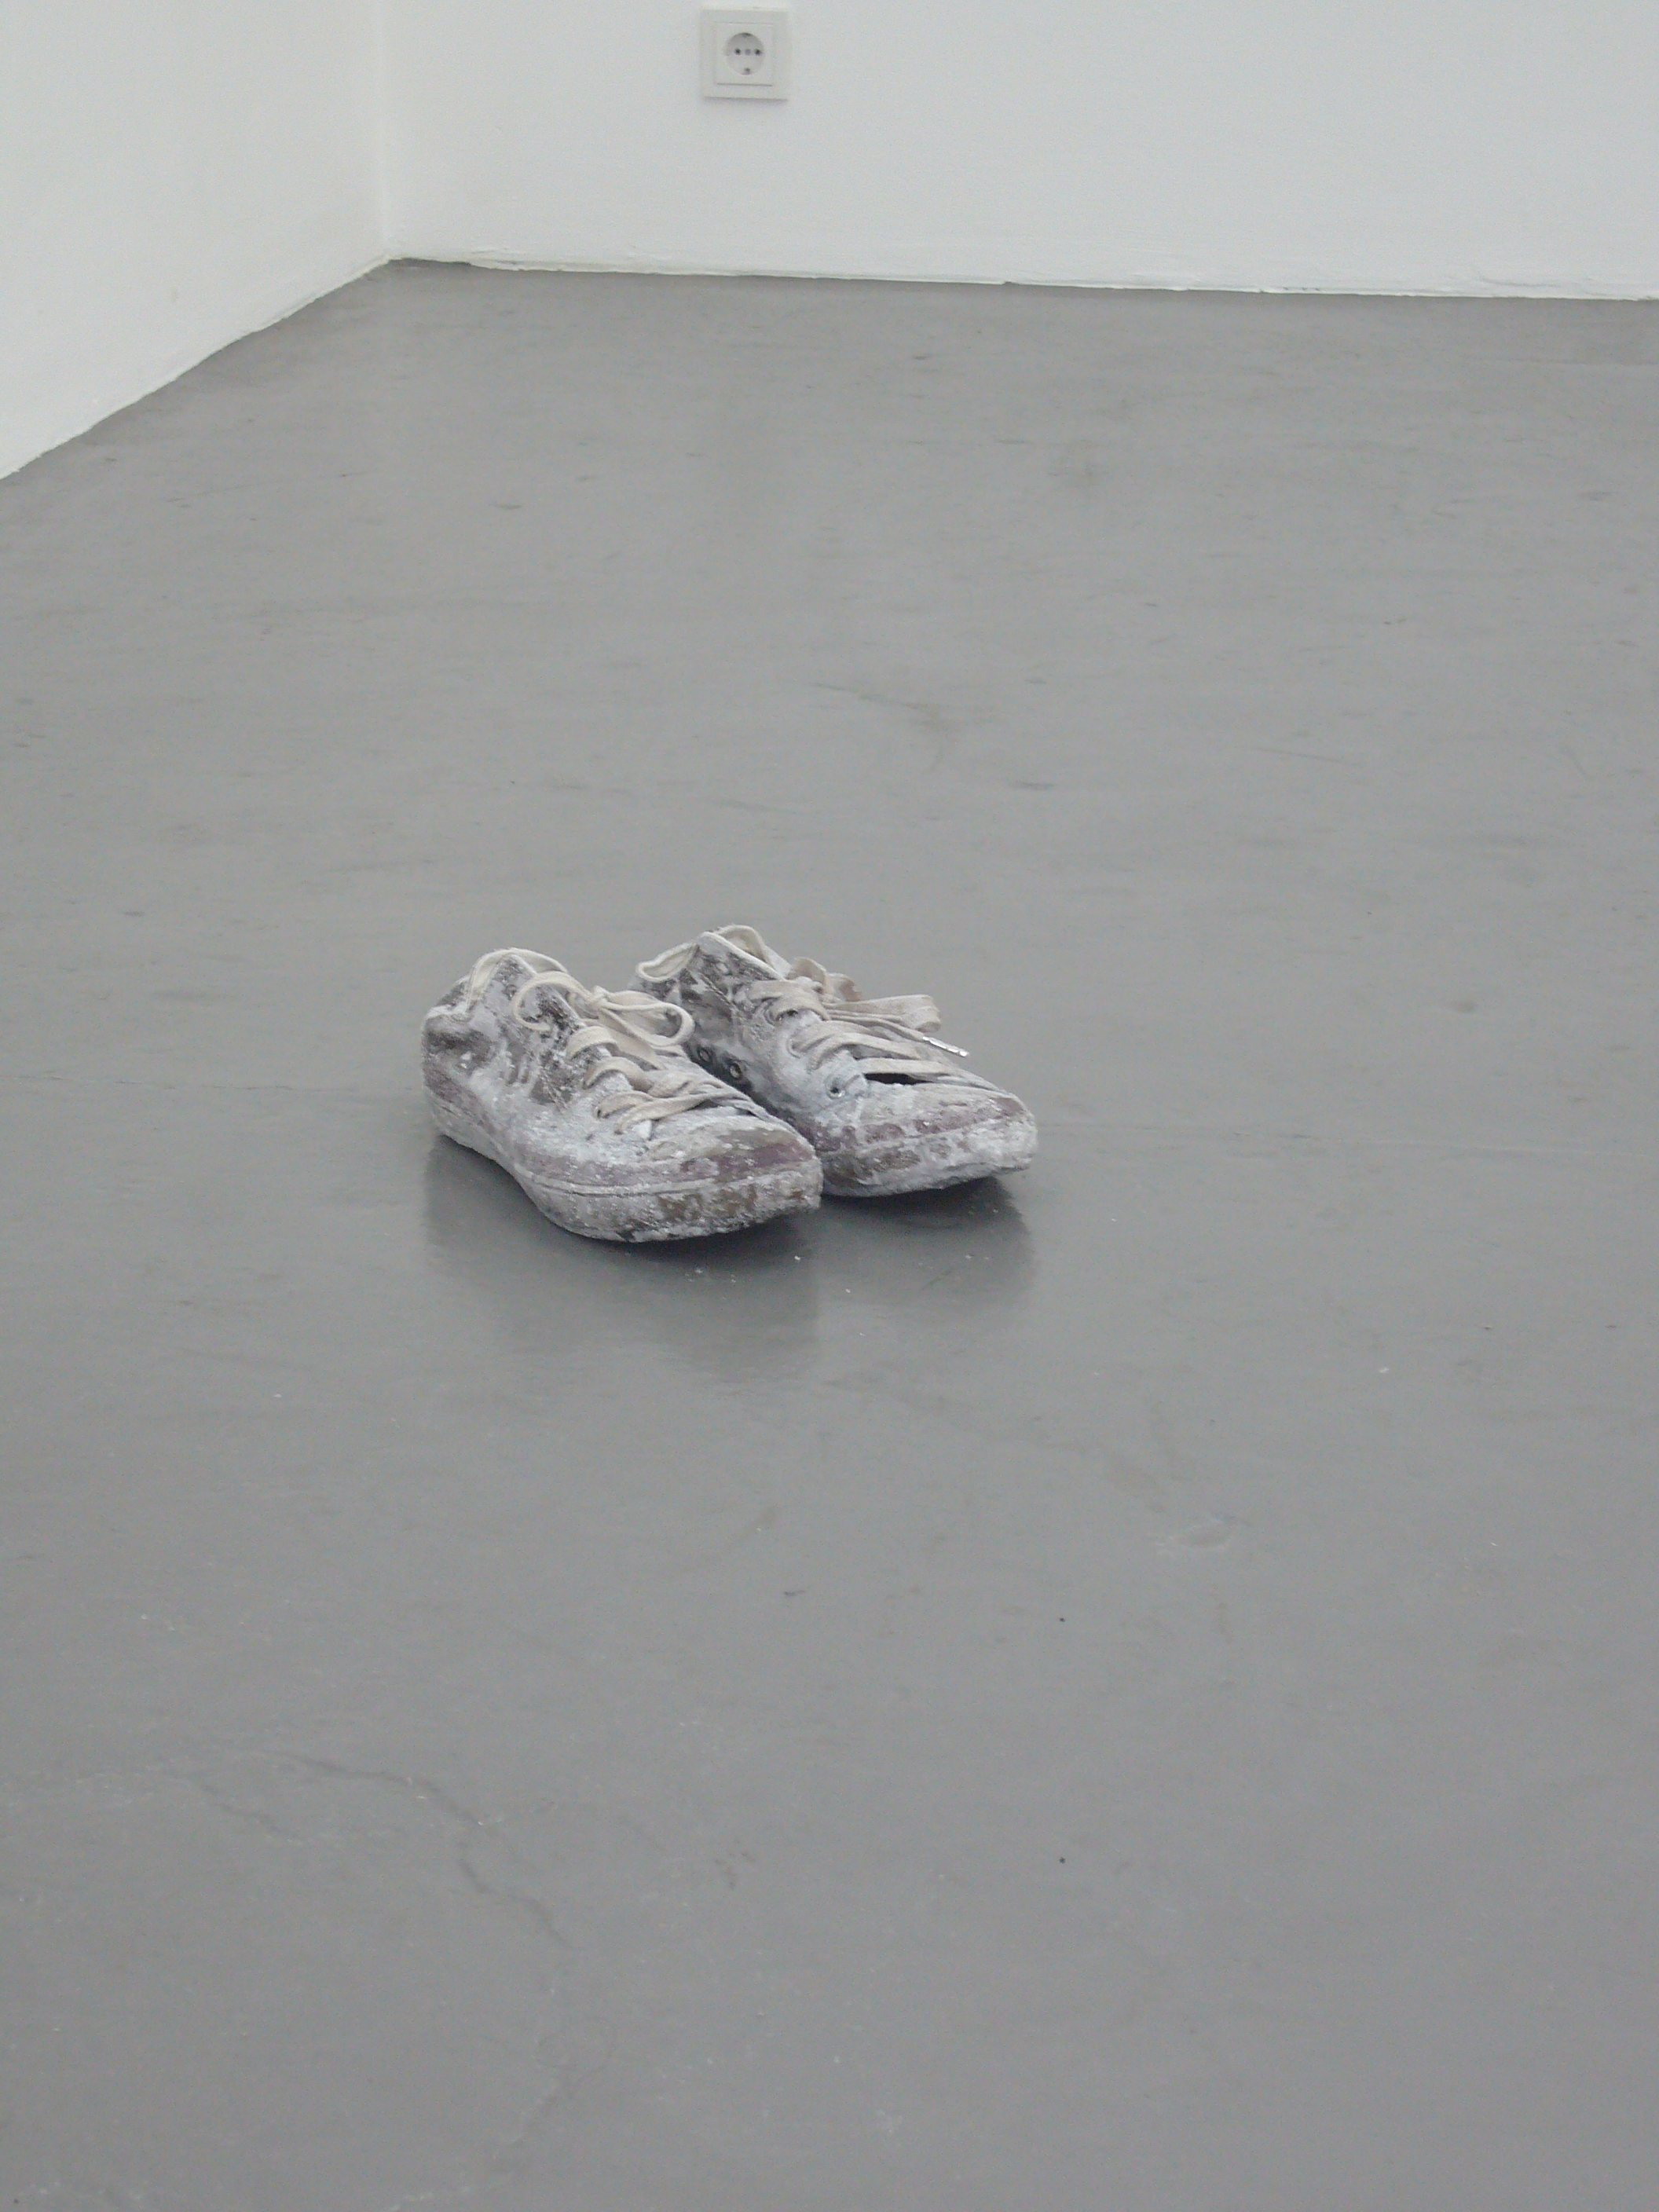  Julien Bismuth: “Monologues for Minerals, 1.1 (Salt Flat/Radio Stück)”, 2007, Exhibition views Galerie Parisa Kind, Frankfurt am Main 